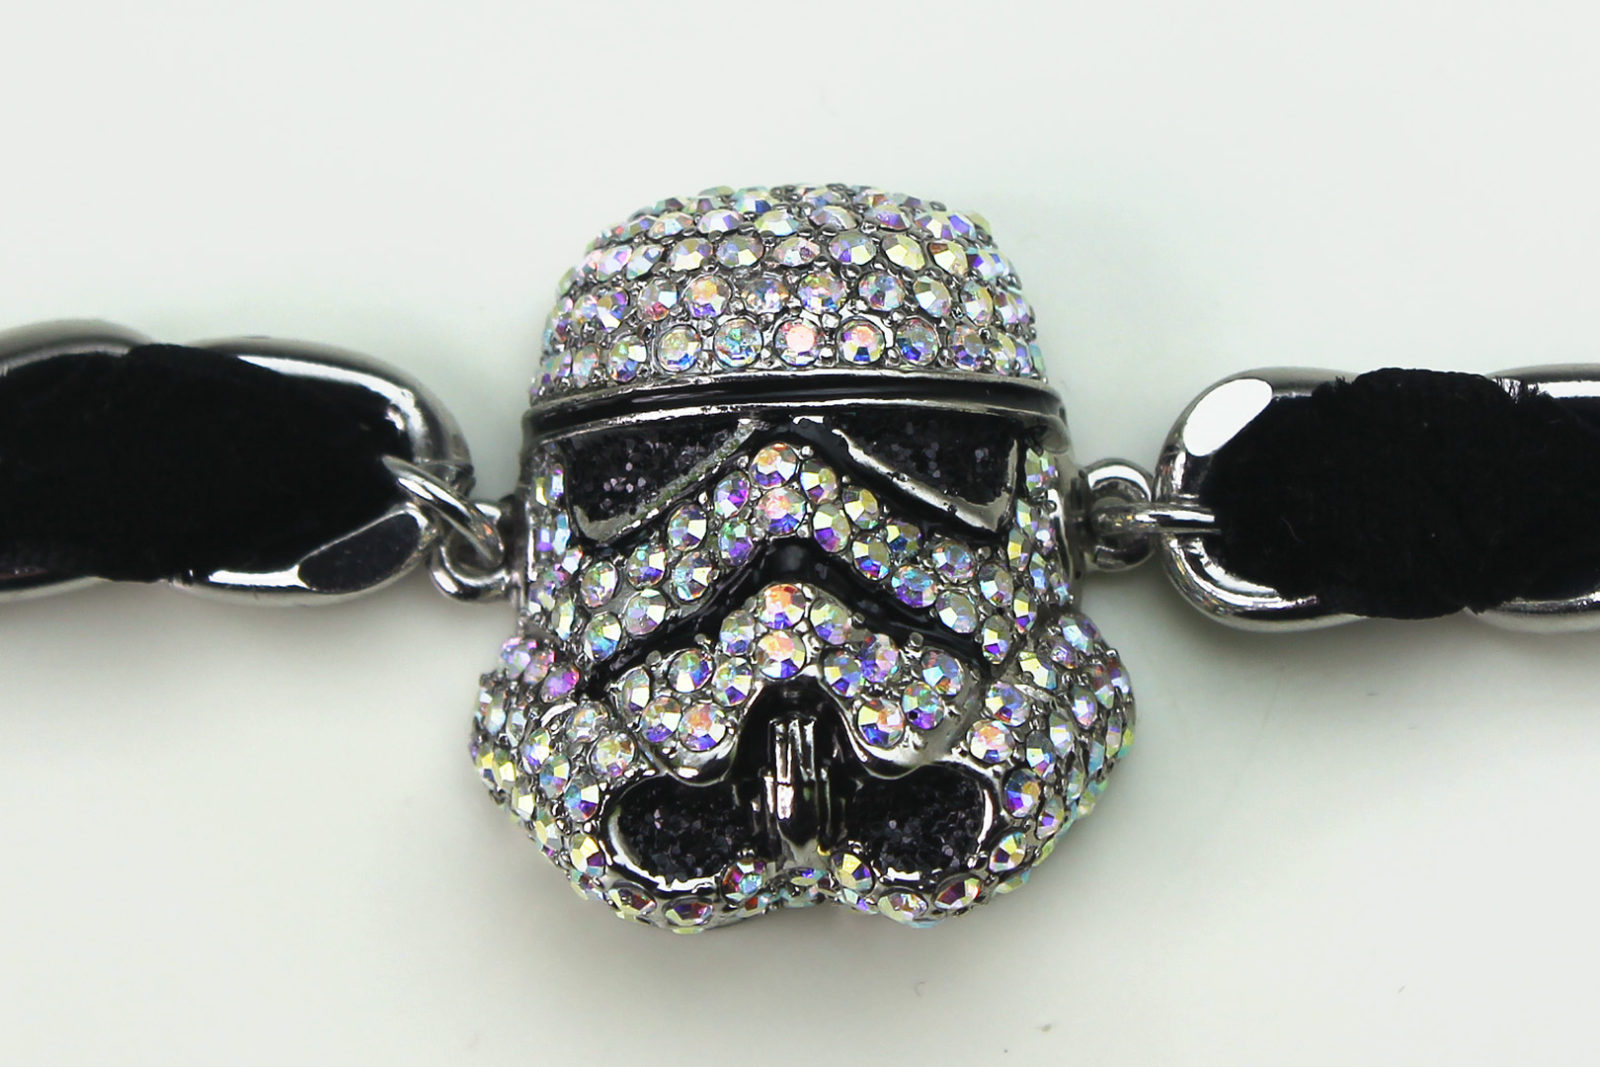 HSN - 'bling' Stormtrooper helmet bracelet by SG@NYC, LLC